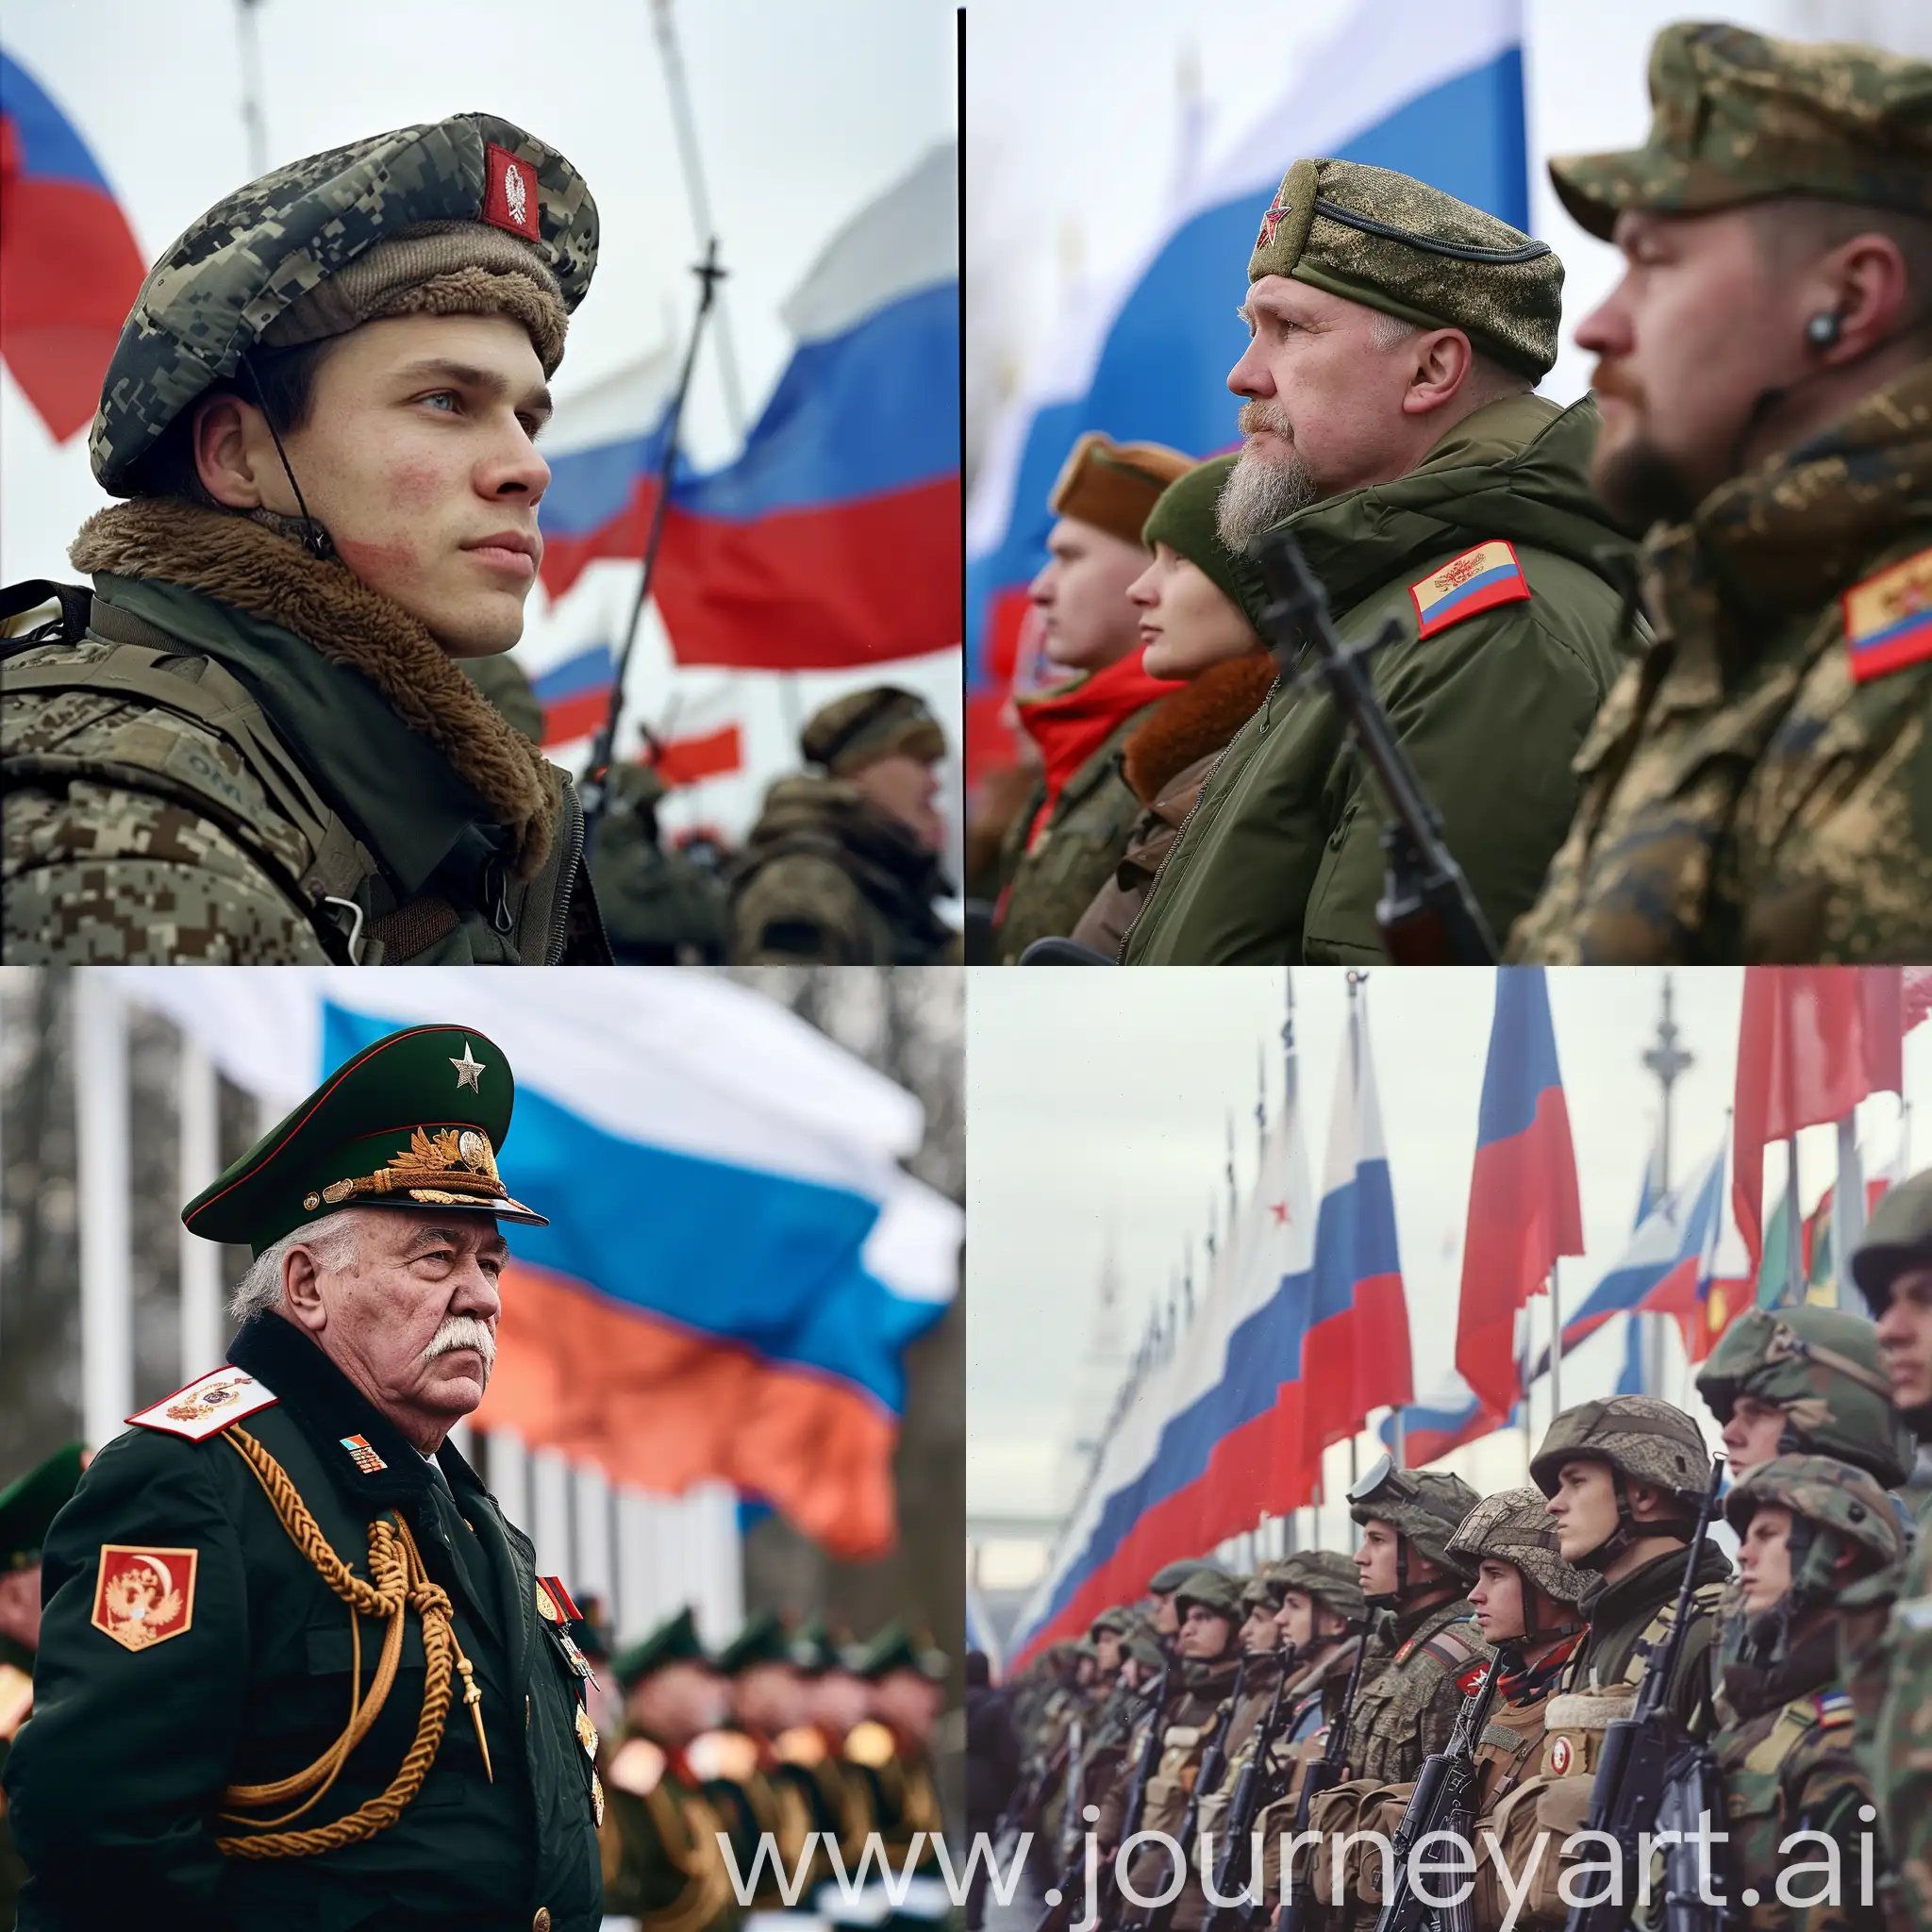 23 февраля, фон флаги России и СССР, армейский стиль, 